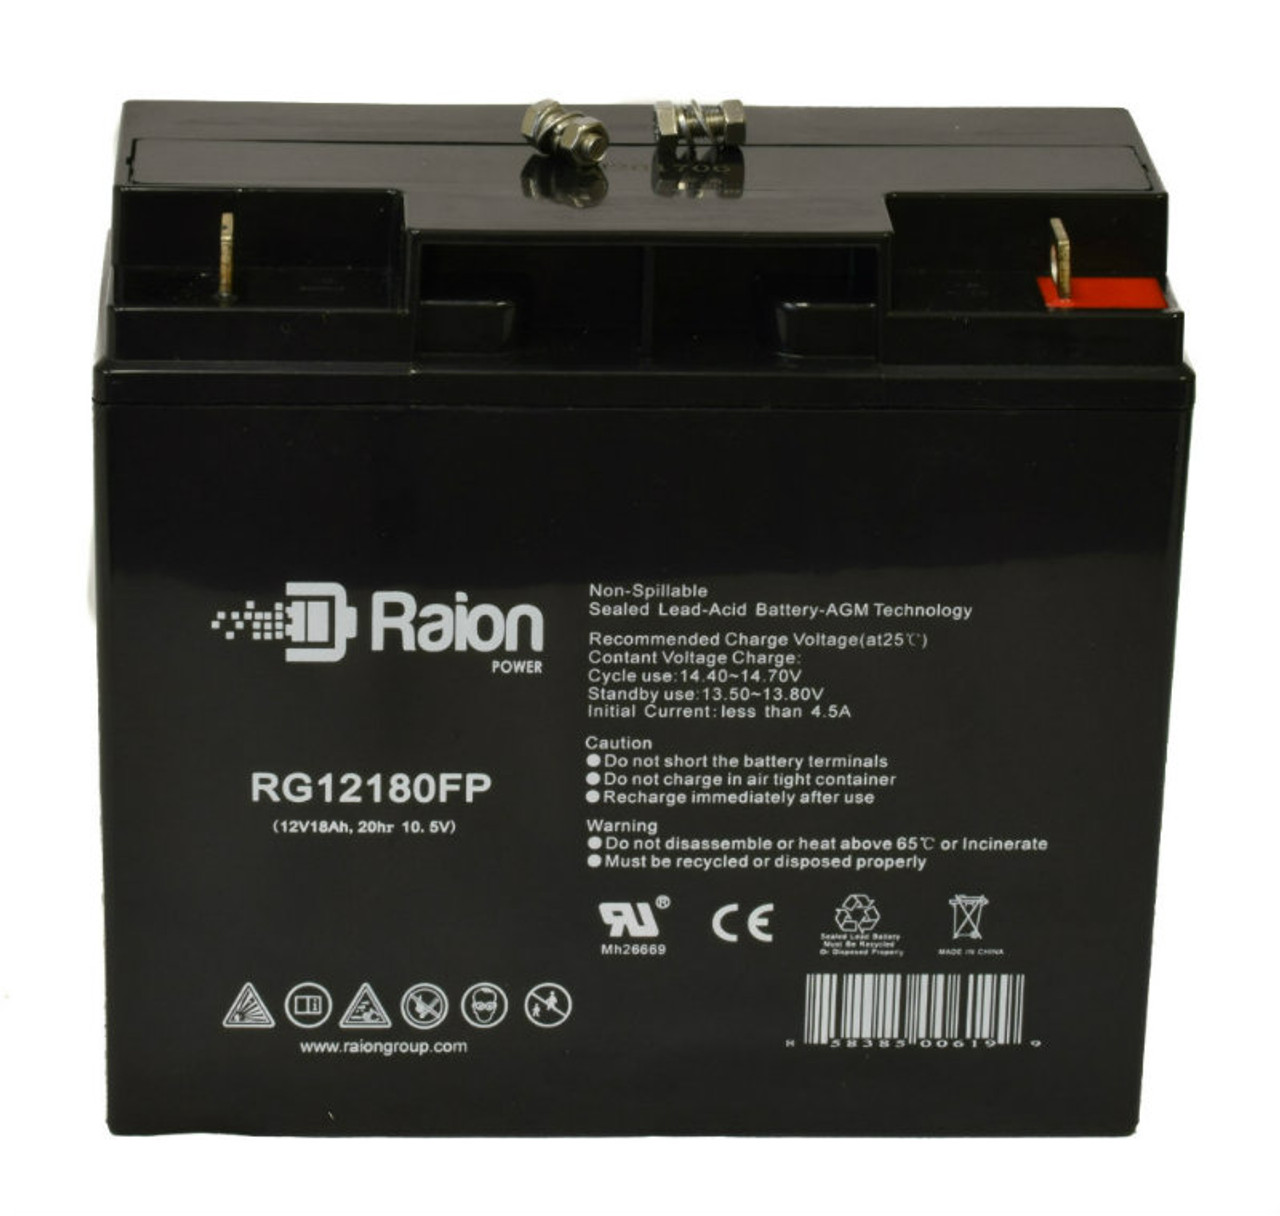 Raion Power RG12180FP 12V 18Ah Lead Acid Battery for Wangpin 6FM18D